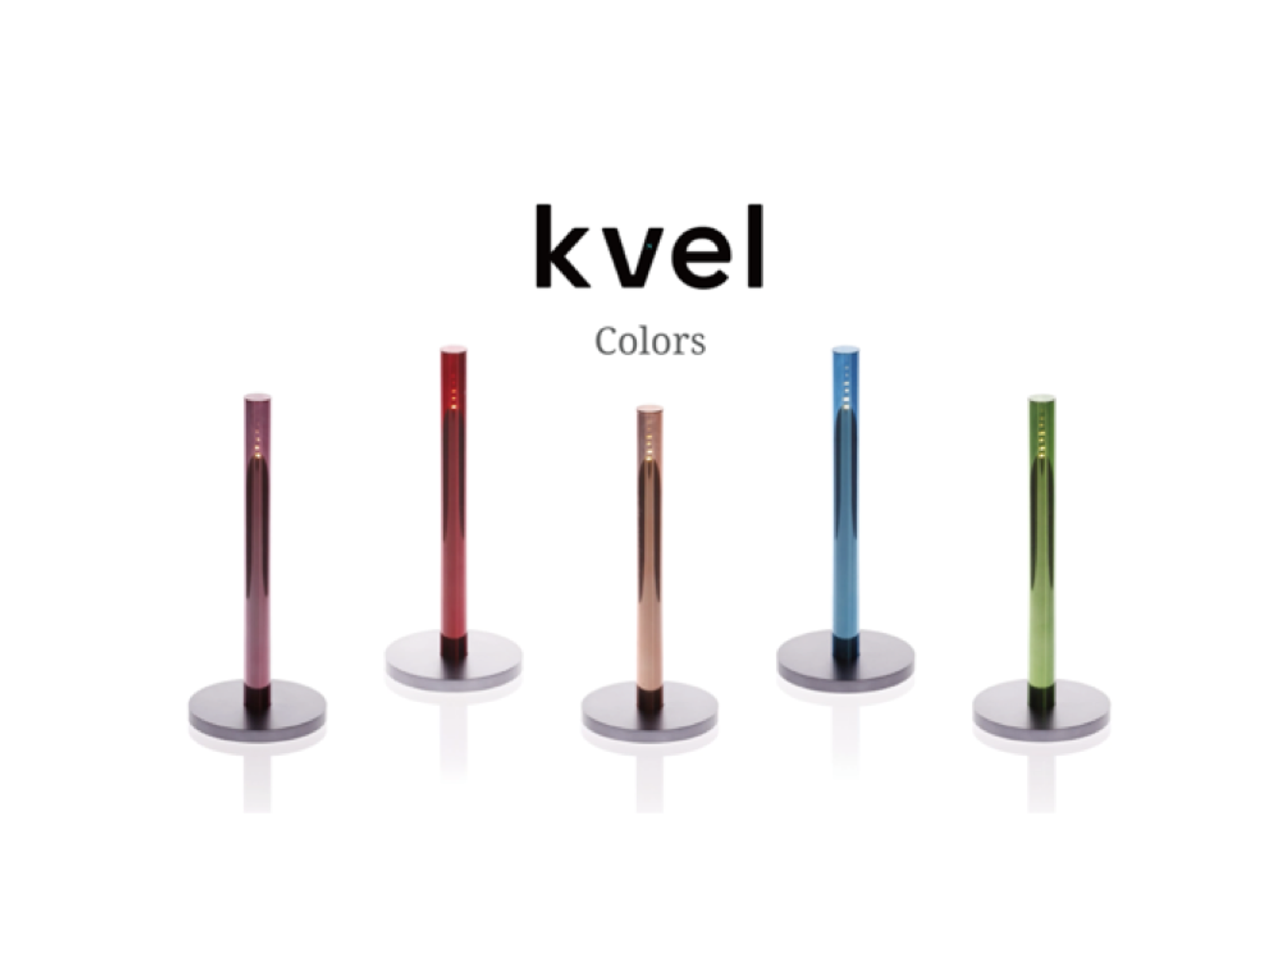 火を使わない革新的なロウソク｢Kvel Colors｣がキャンペーンを開始